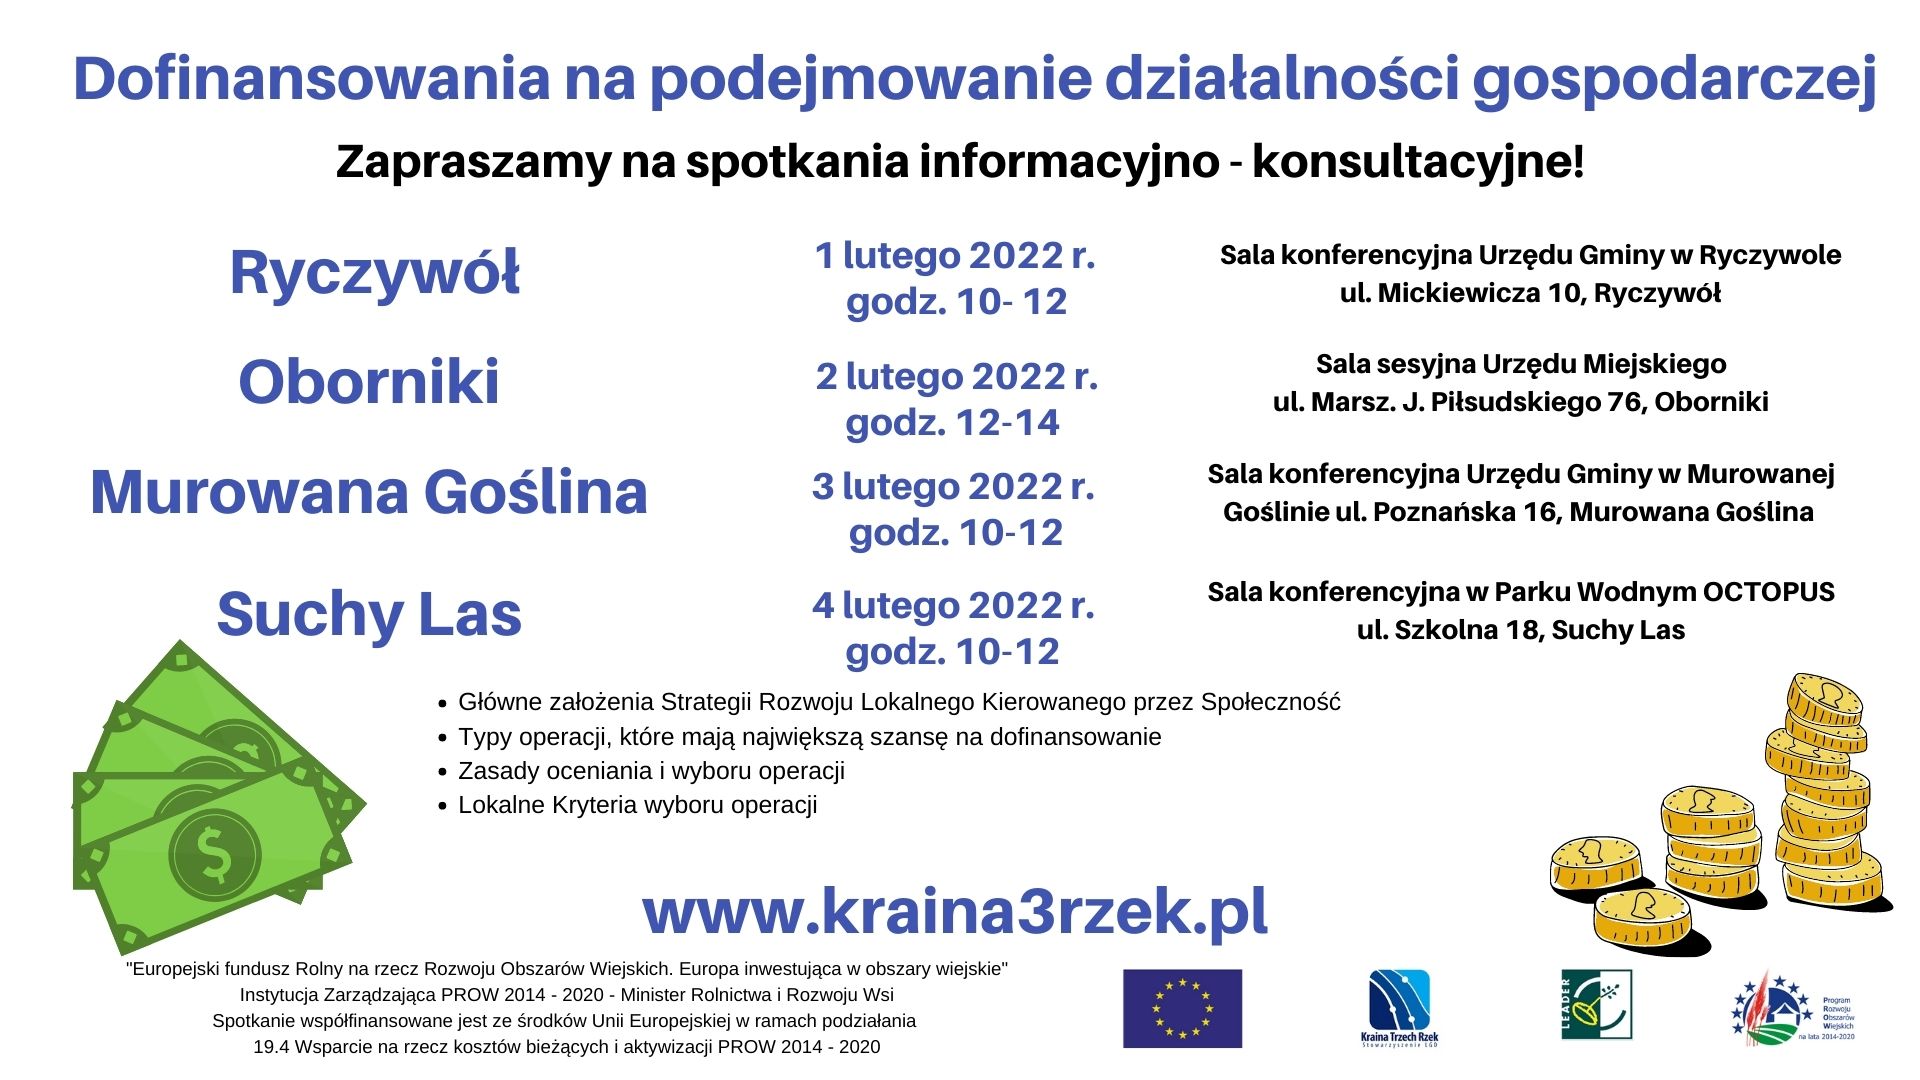 plakat informacyjny o spotkaniach informacyjno-konsultacyjnych dotyczących dofinansowań na podejmowanie działalności gospodarczej. LGD Kraina Trzech Rzek